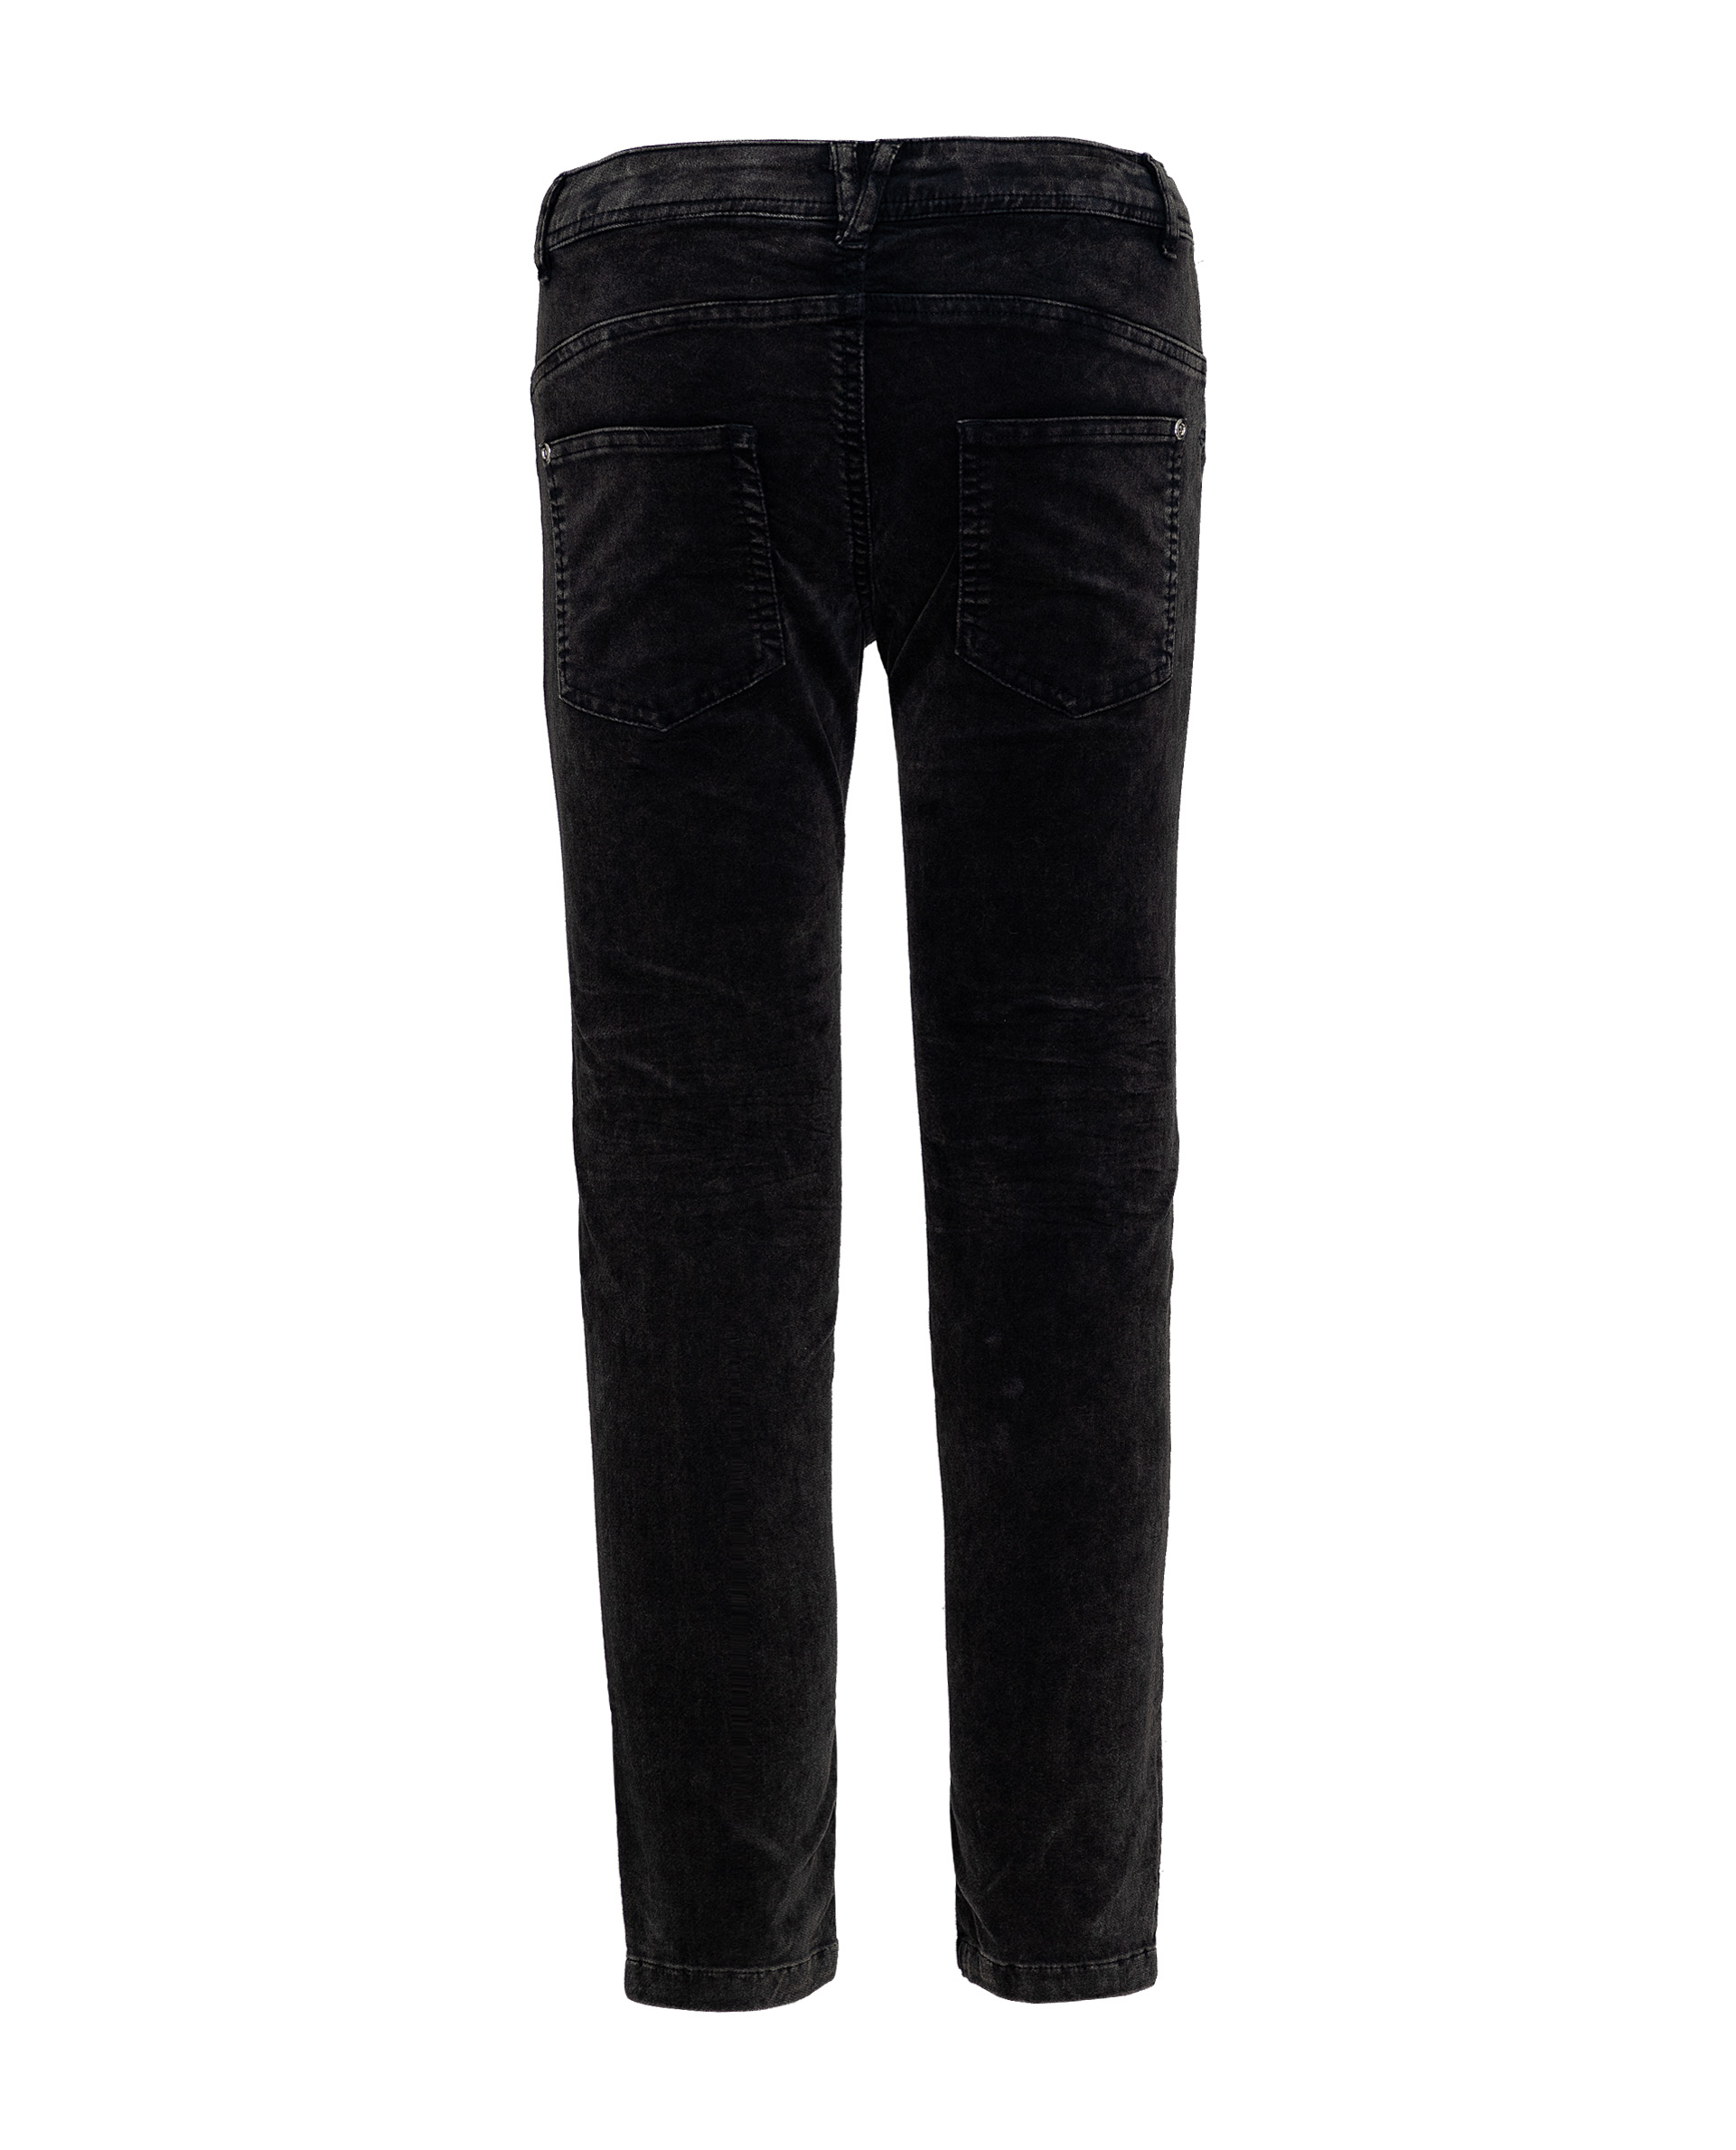 Серые брюки Gulliver 21909GJC6305, размер 140, цвет серый - фото 2